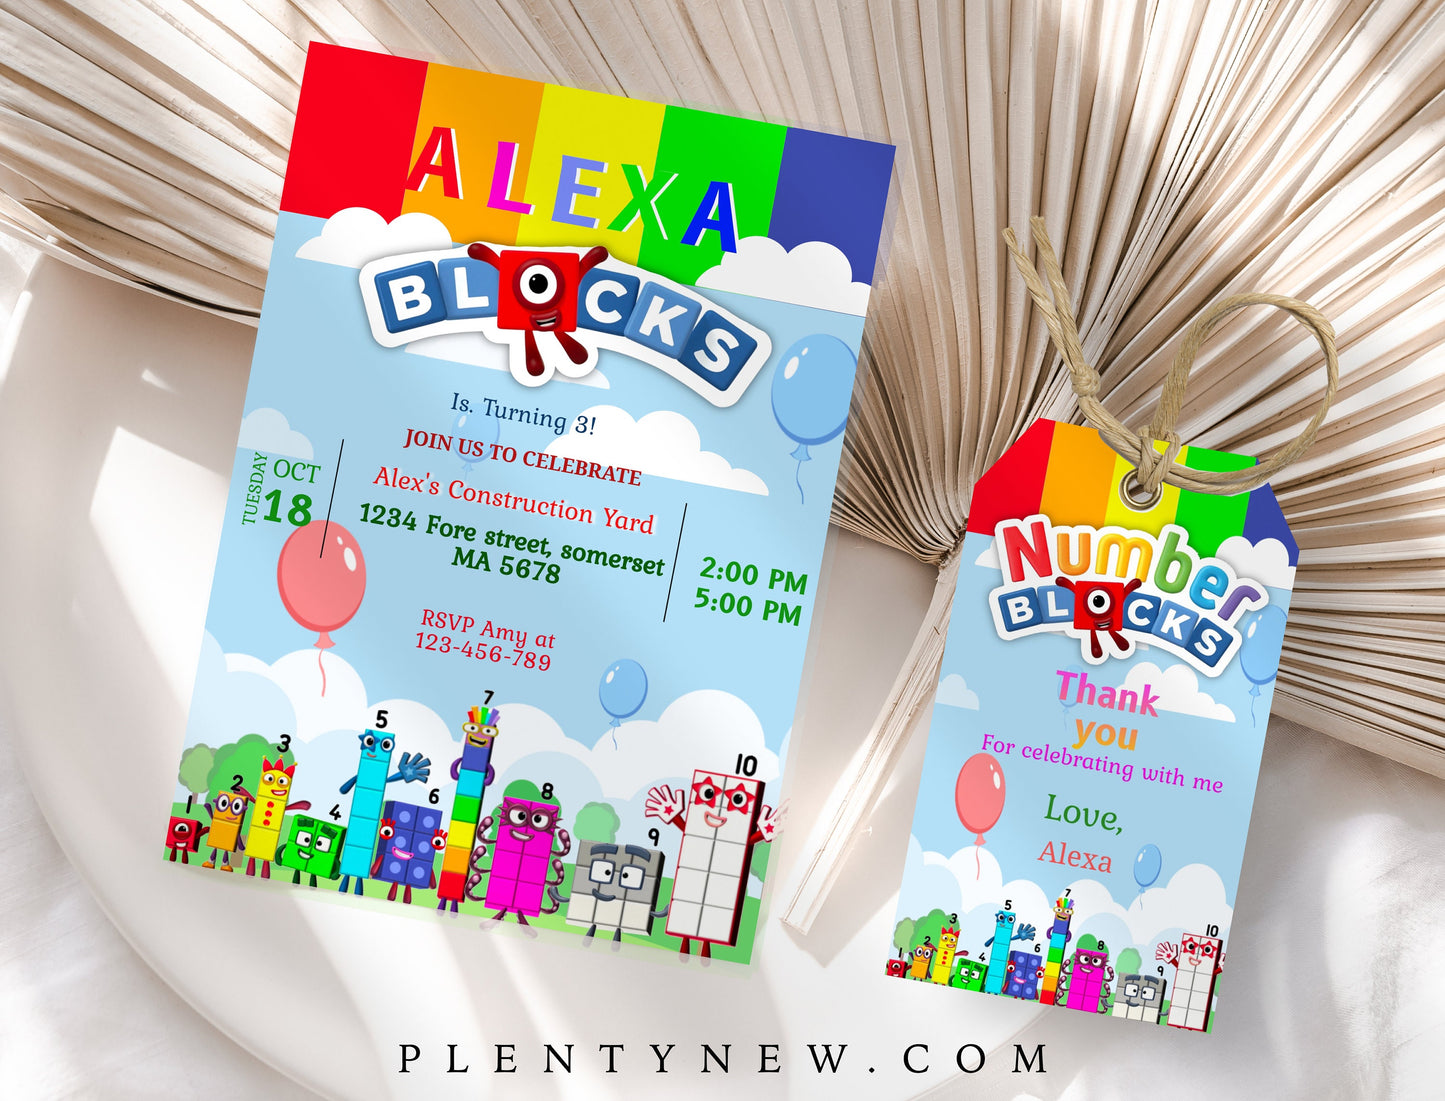 Numberblocks Birthday Invitation | Numberblocks Party Invite | Numberblocks Printable Invitation | Digital Editable Template | NUMBER BLOCKS